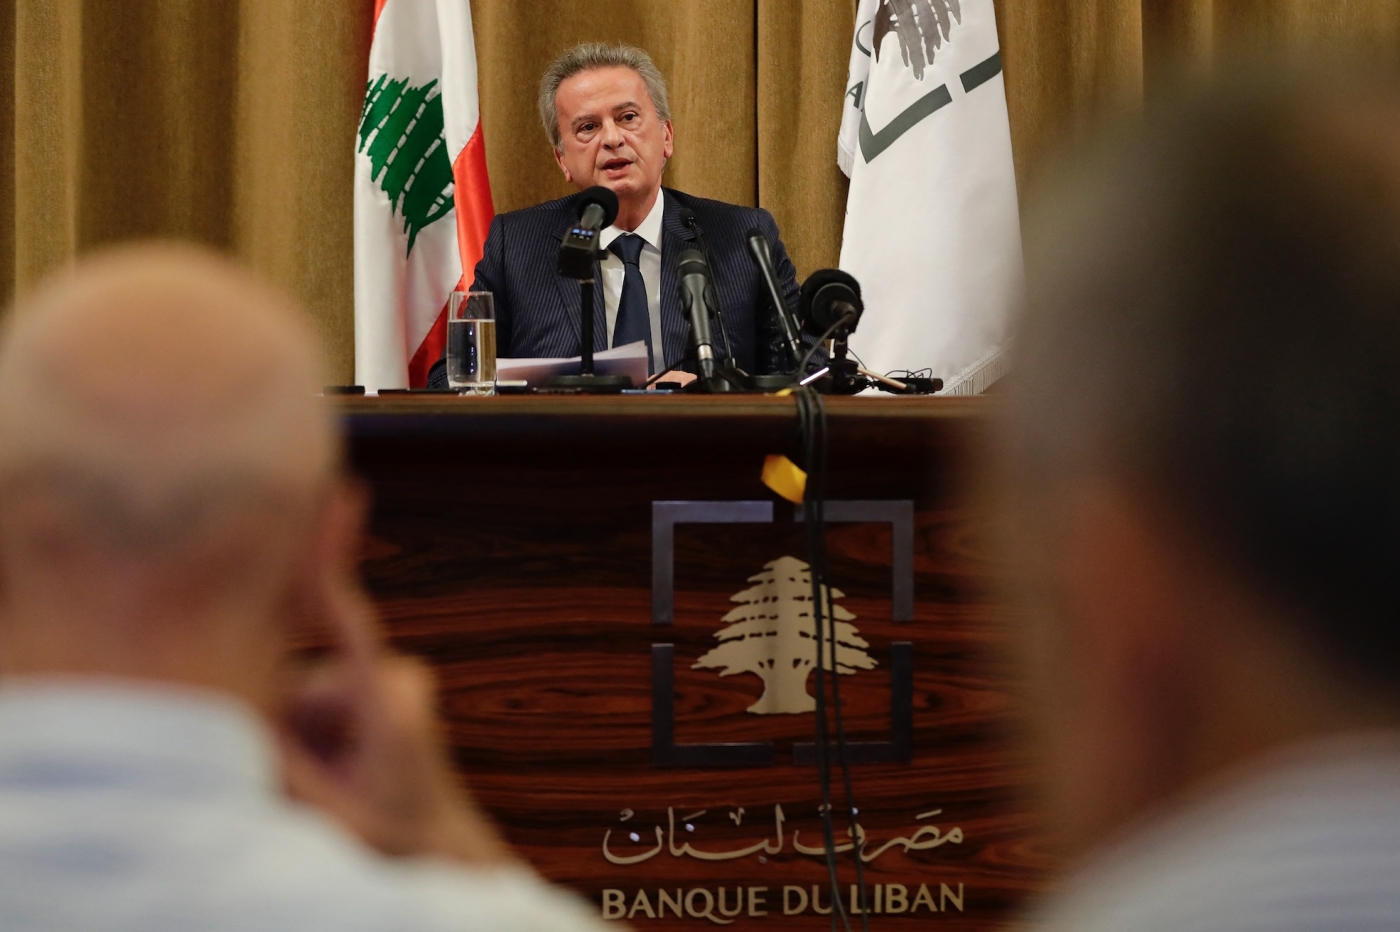 Le gouverneur de la Banque centrale du Liban, Riad Salamé, s’exprime lors d’une conférence de presse au siège de la banque à Beyrouth, le 11 novembre 2019 (AFP)